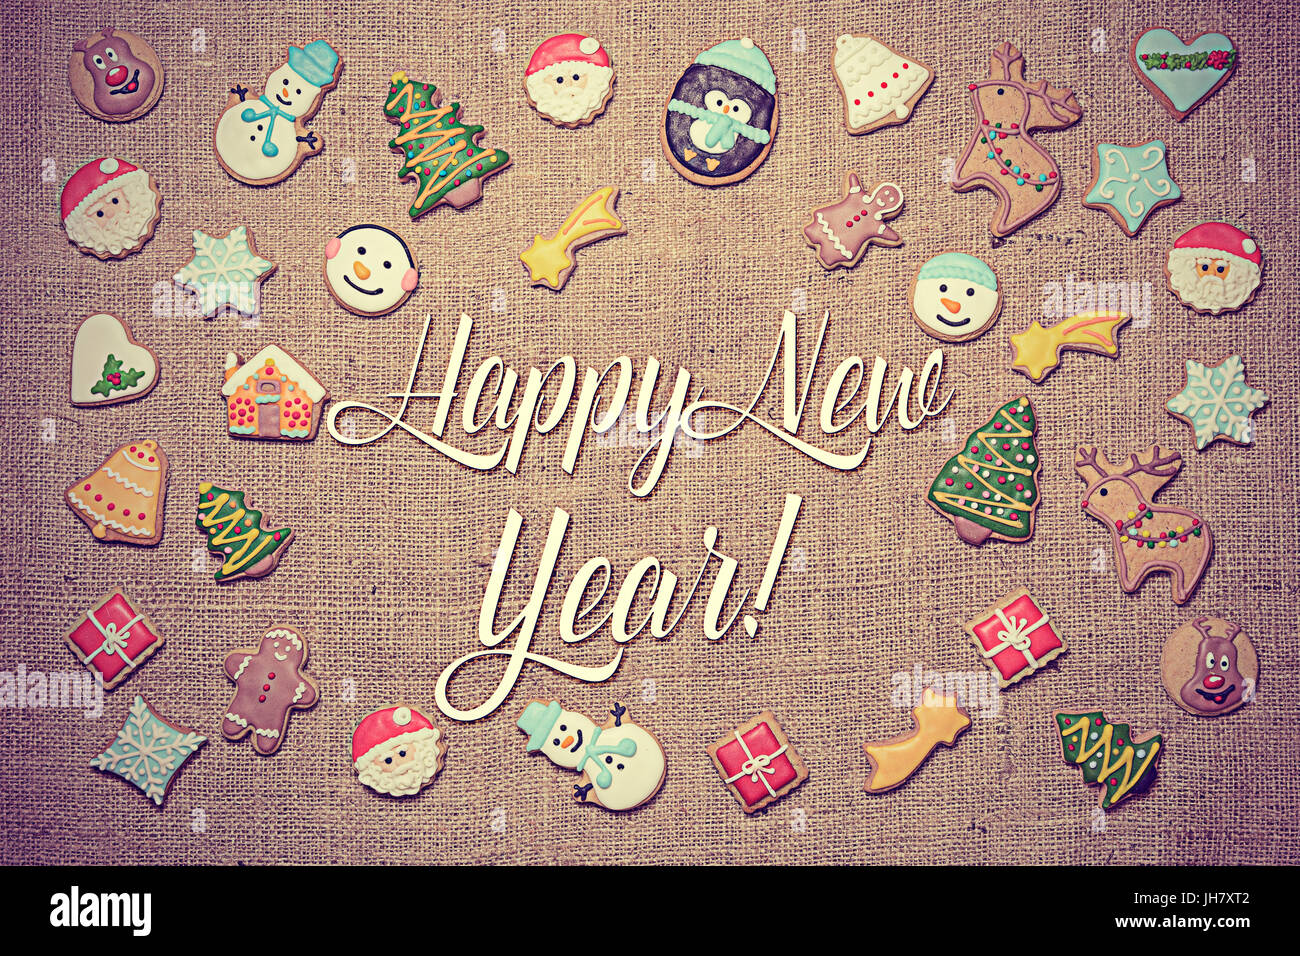 Felice Anno Nuovo! Messaggio di saluto festivo scritto tra decorativo biscotti di panpepato. Look Vintage aggiunti in fase di post-elaborazione. Foto Stock